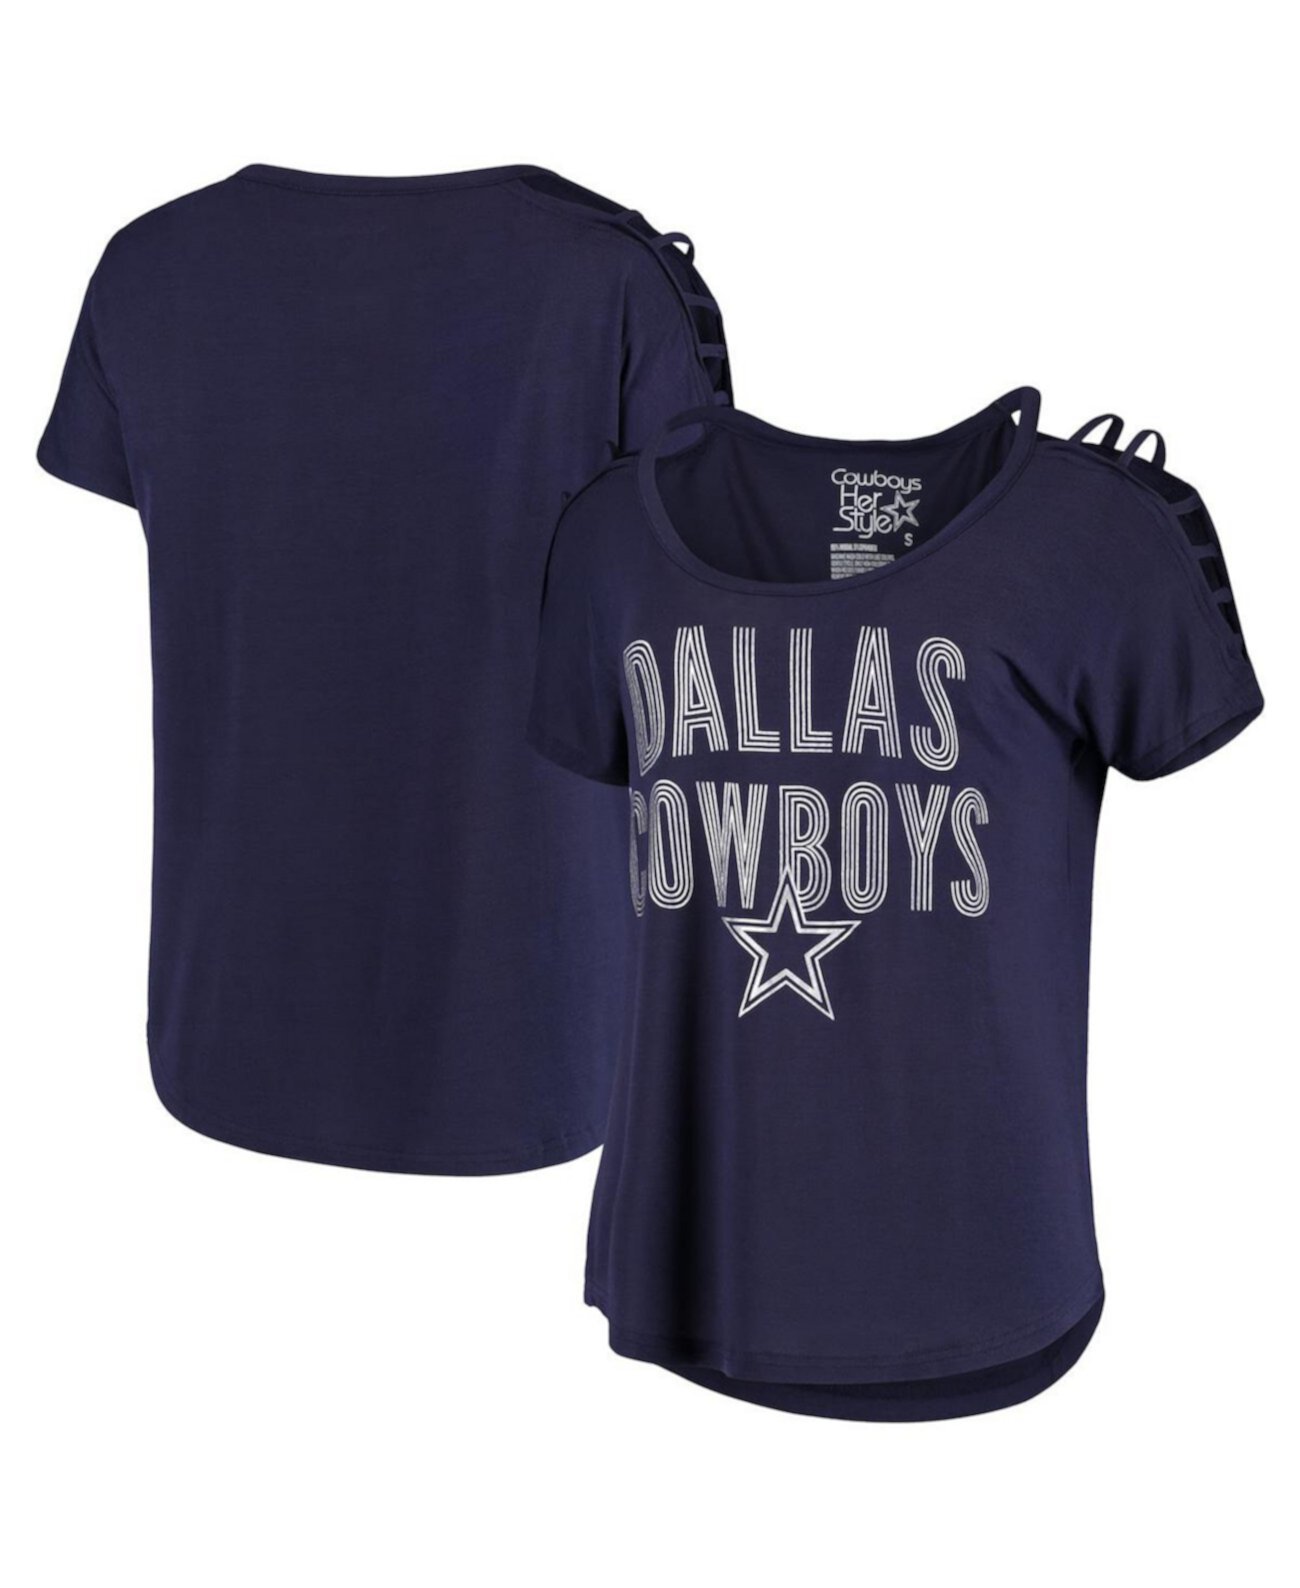 Женская темно-синяя футболка Ursula с круглым вырезом Dallas Cowboys